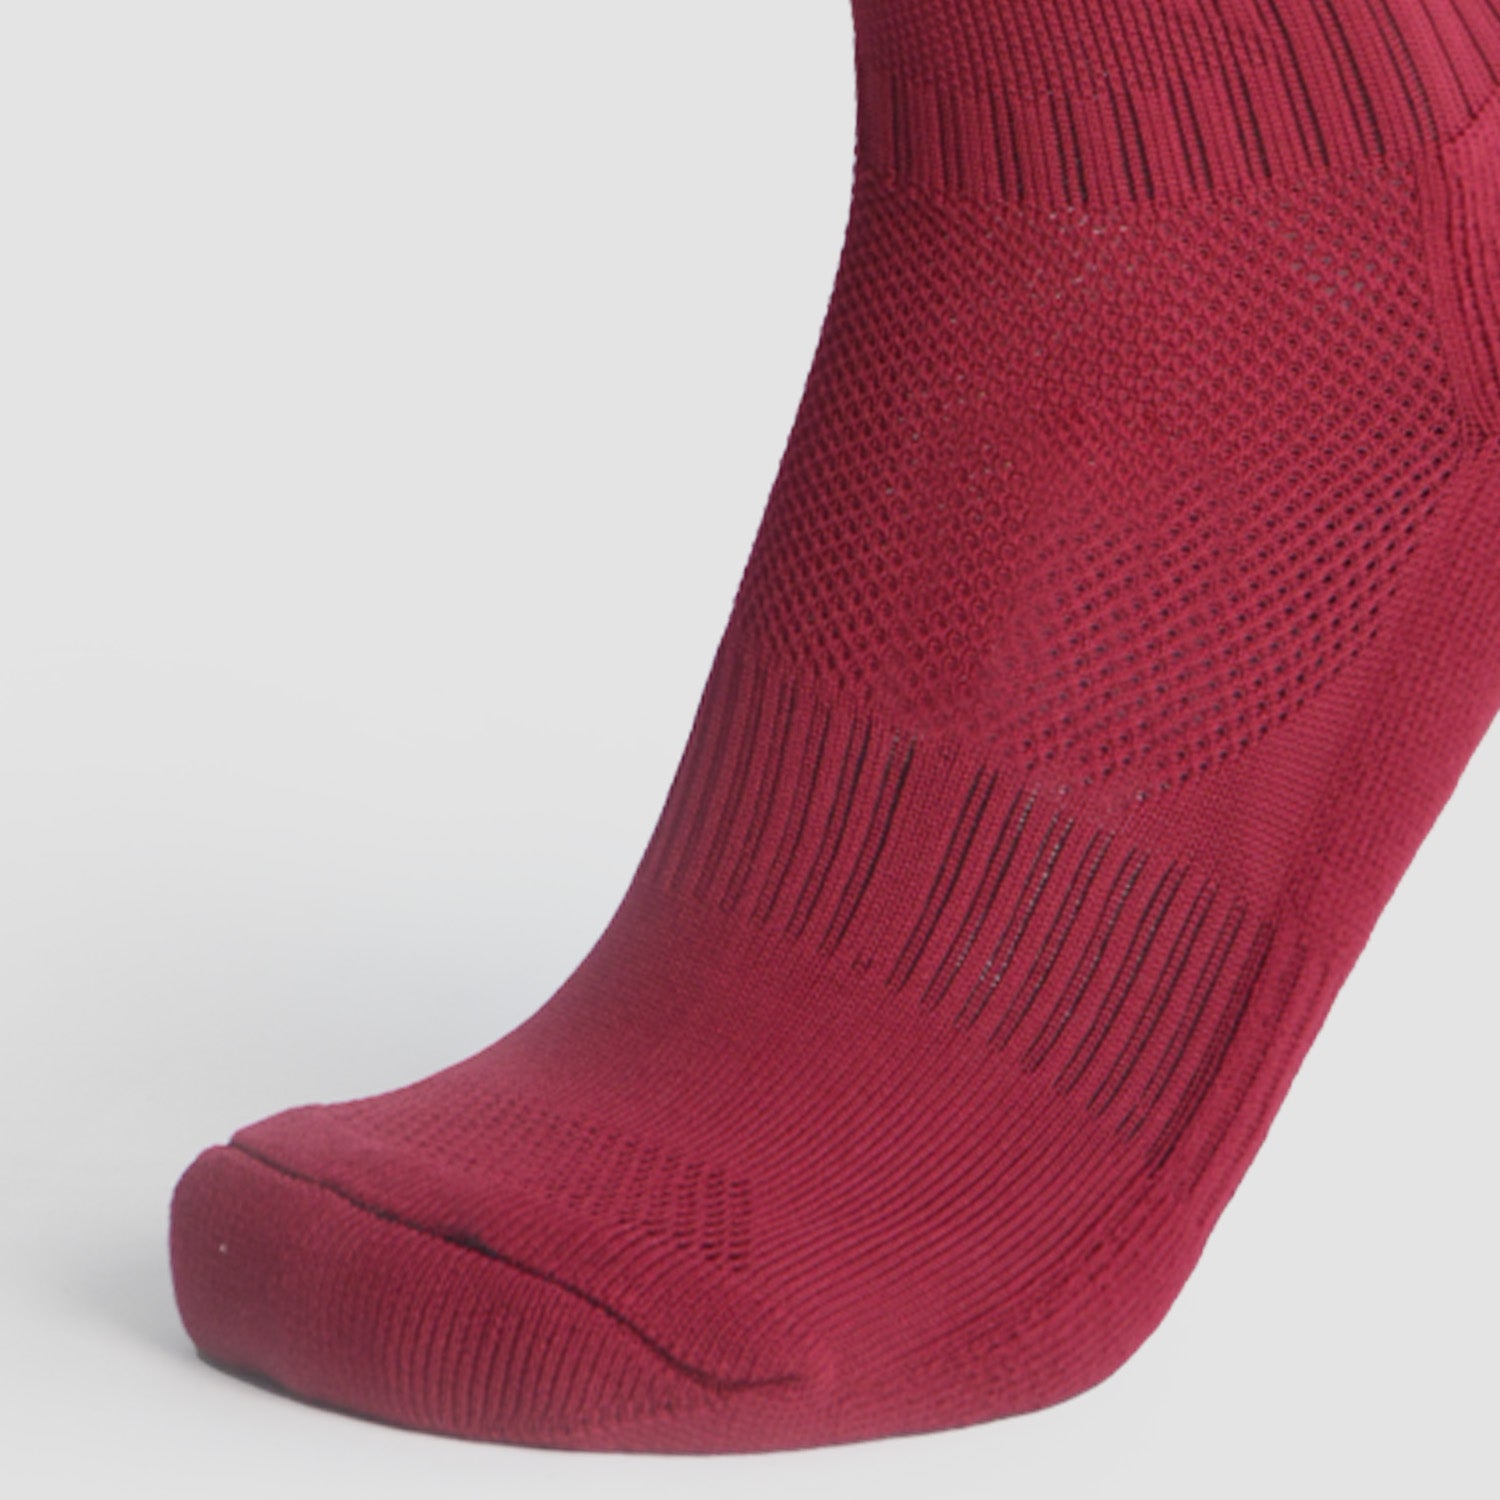 Tricolored Soccer socks